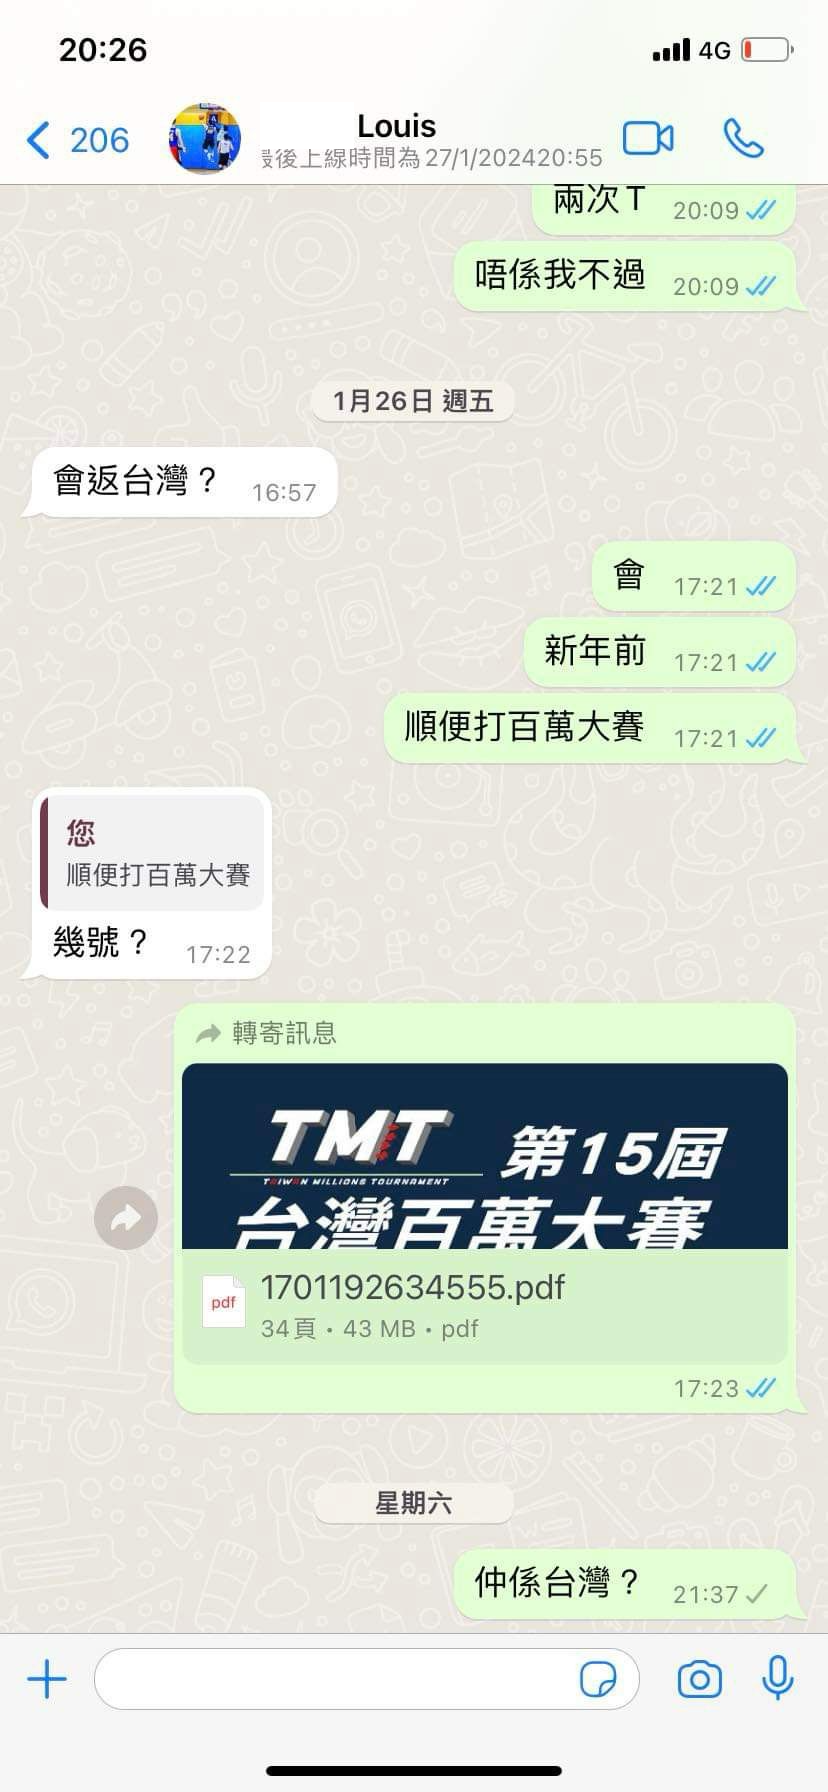 根據陳林華與友人 WhatsApp 通訊紀錄，曾提及 TMT 第15屆台灣百萬大賽。友人 1 月 27 日曾問他是否仍在台灣，惟顯示最後上線時間為 1 月 27 日 20:55。（陳林華胞兄提供）